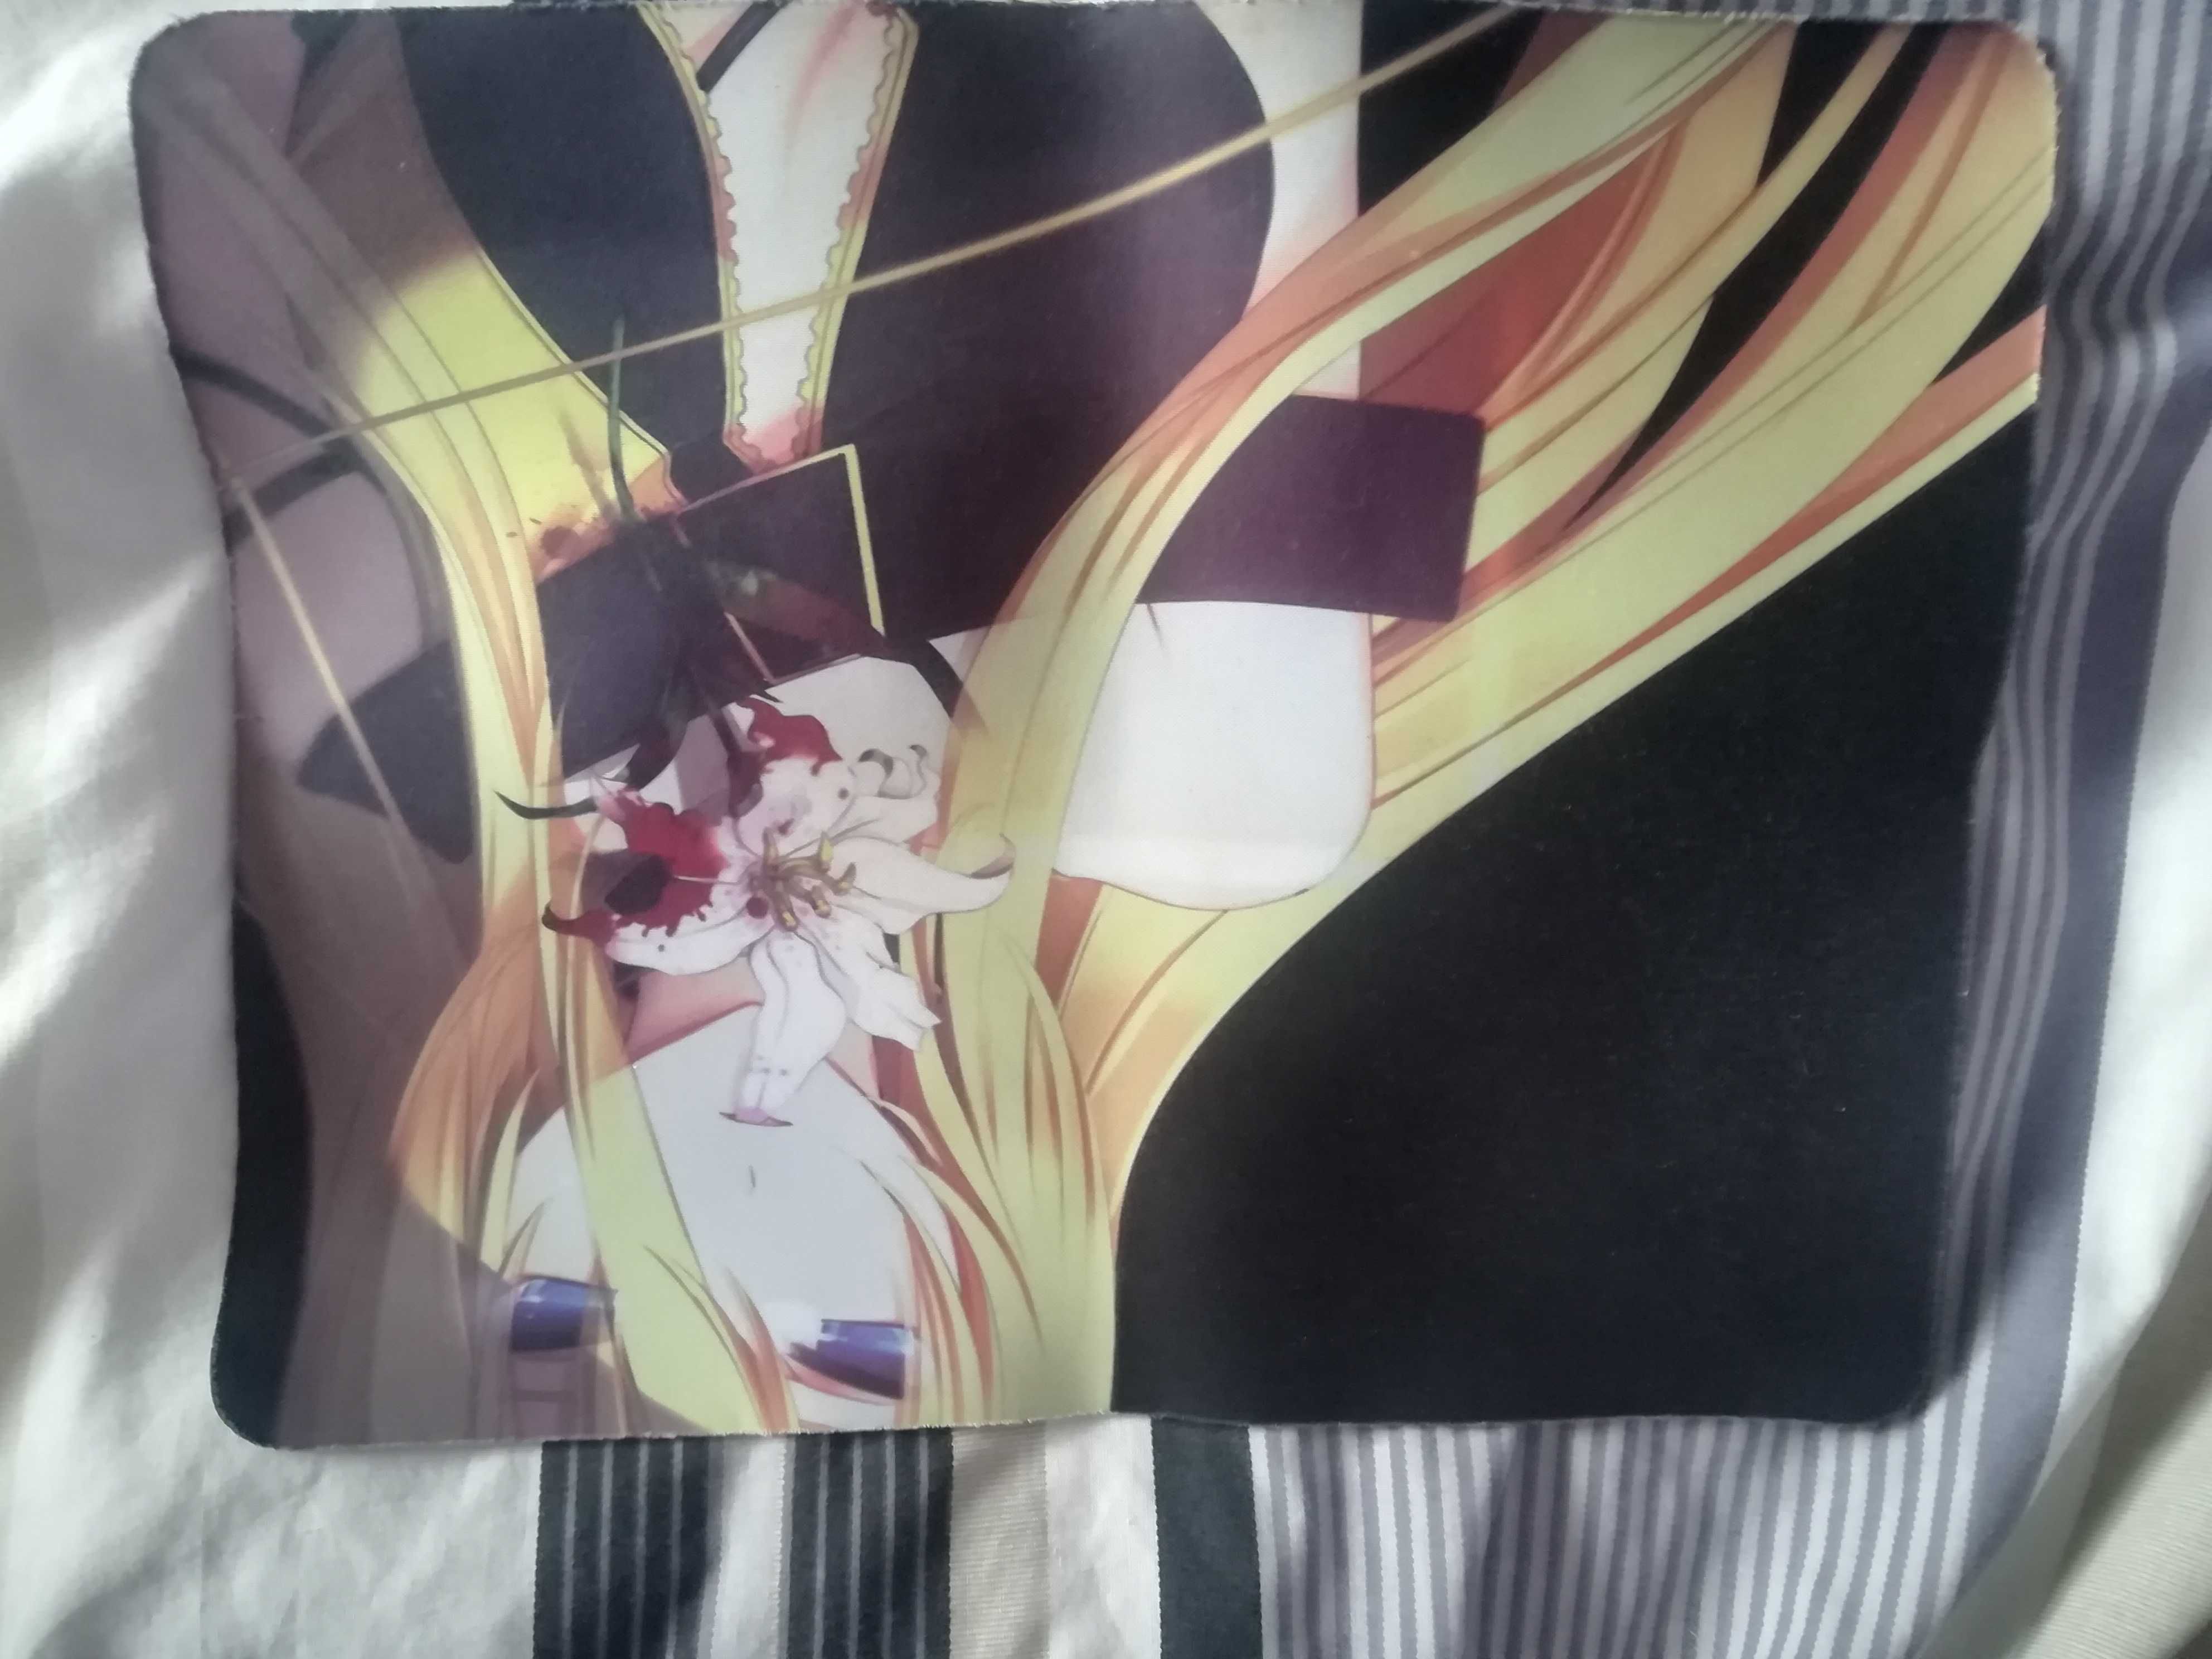 Podkładka materiałowa pod myszkę Vocaloid Lily anime/manga